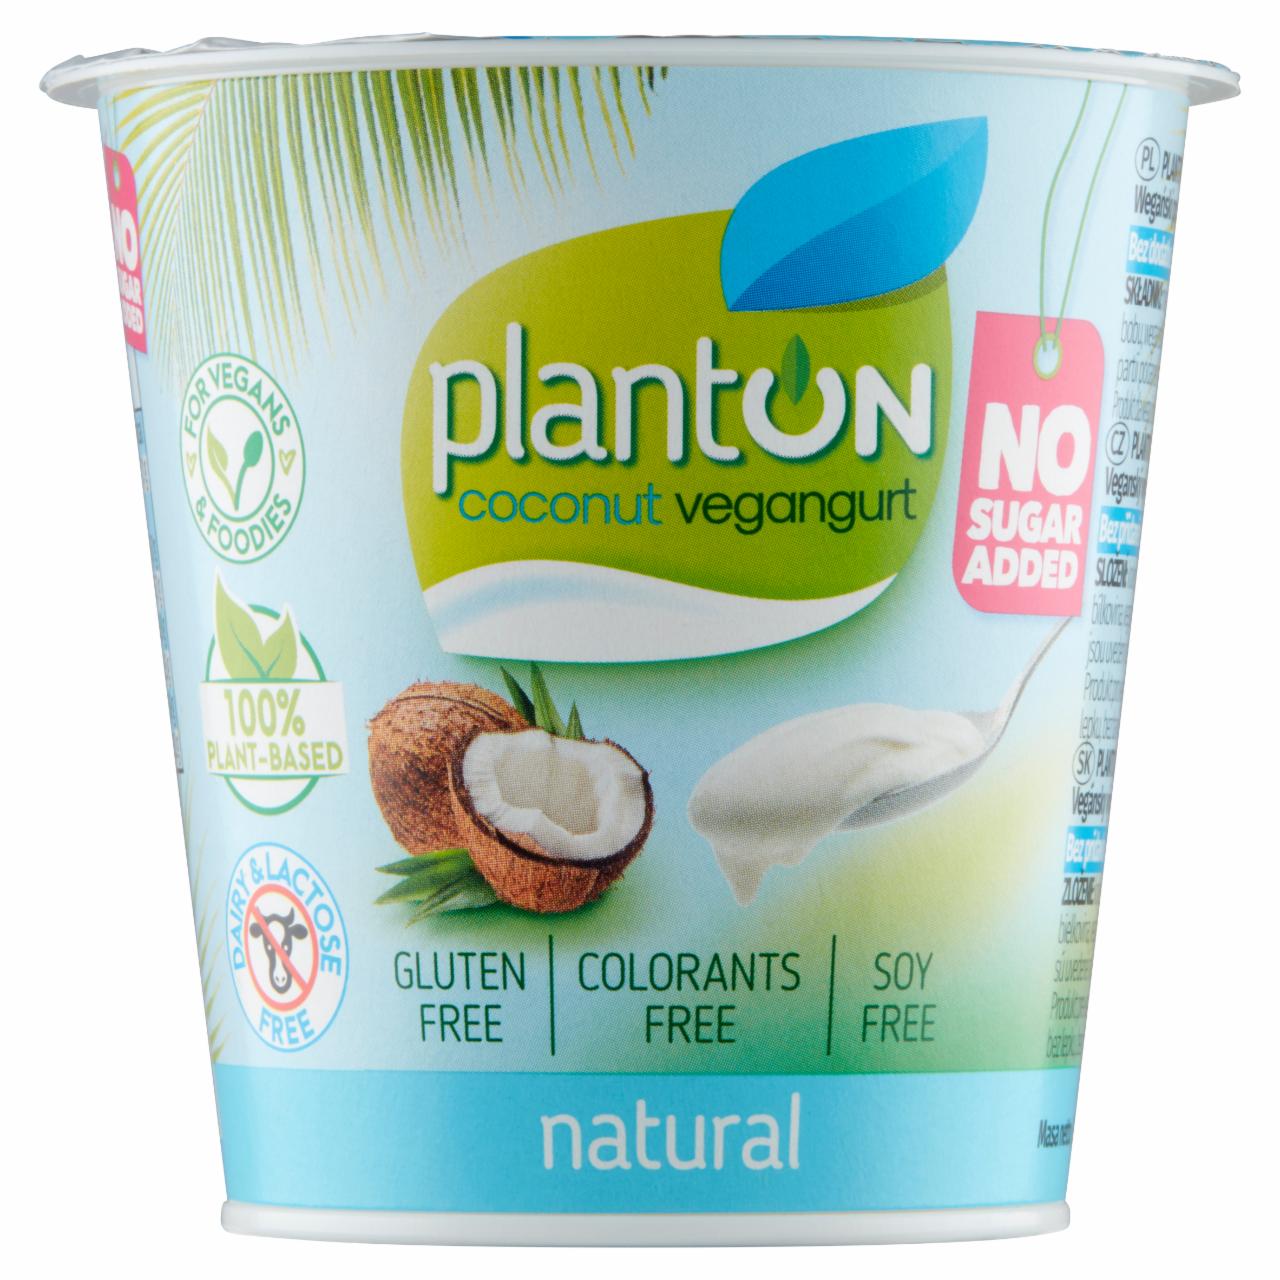 Zdjęcia - Planton Kokosowy vegangurt natural 160 g